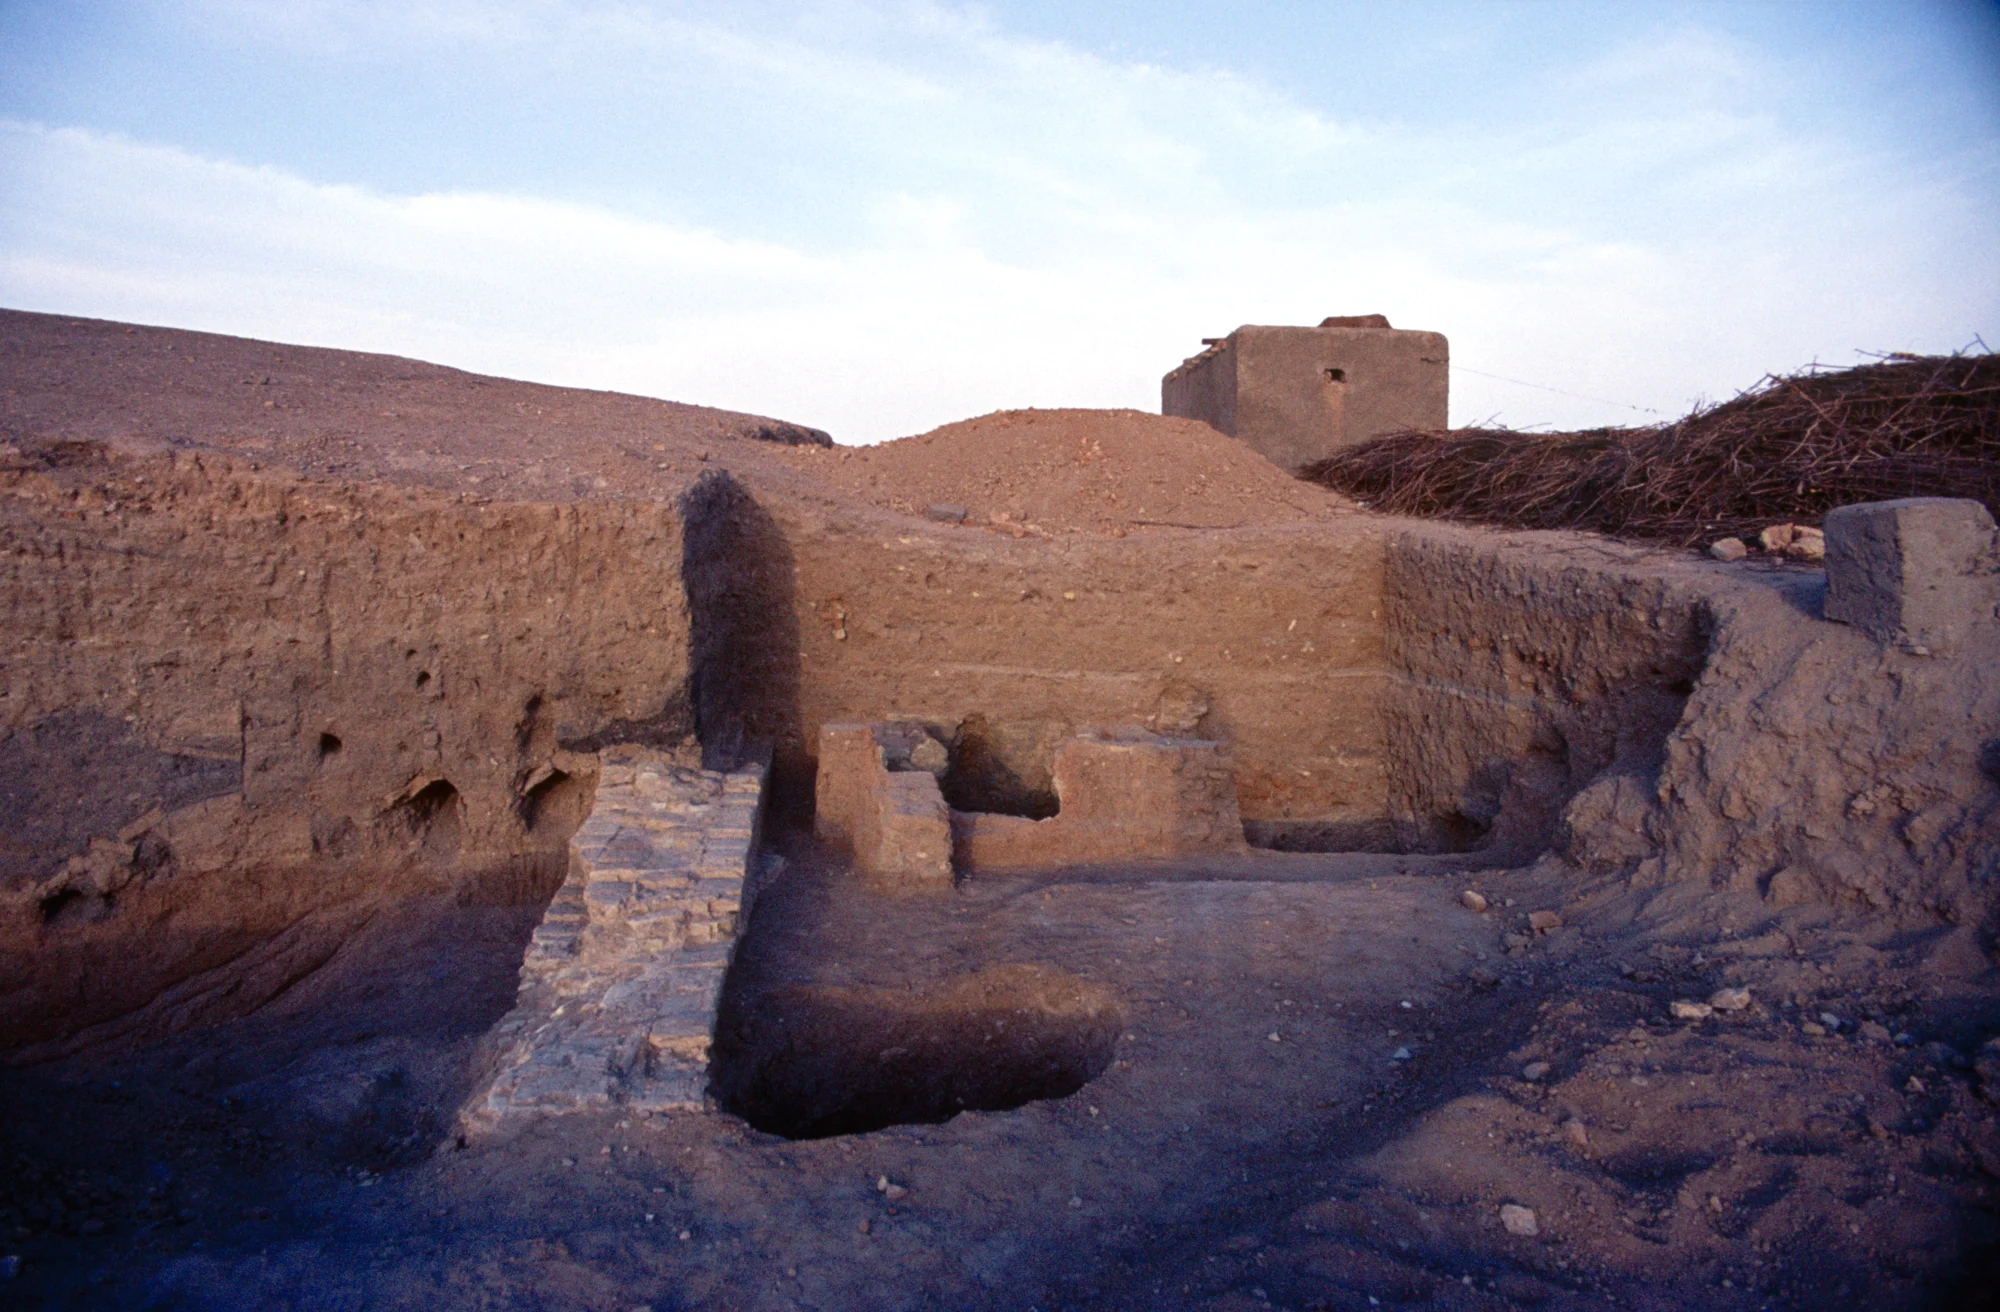 Raqqa - "East of Raqqa" site - Tall Aswad, excavation in 1985